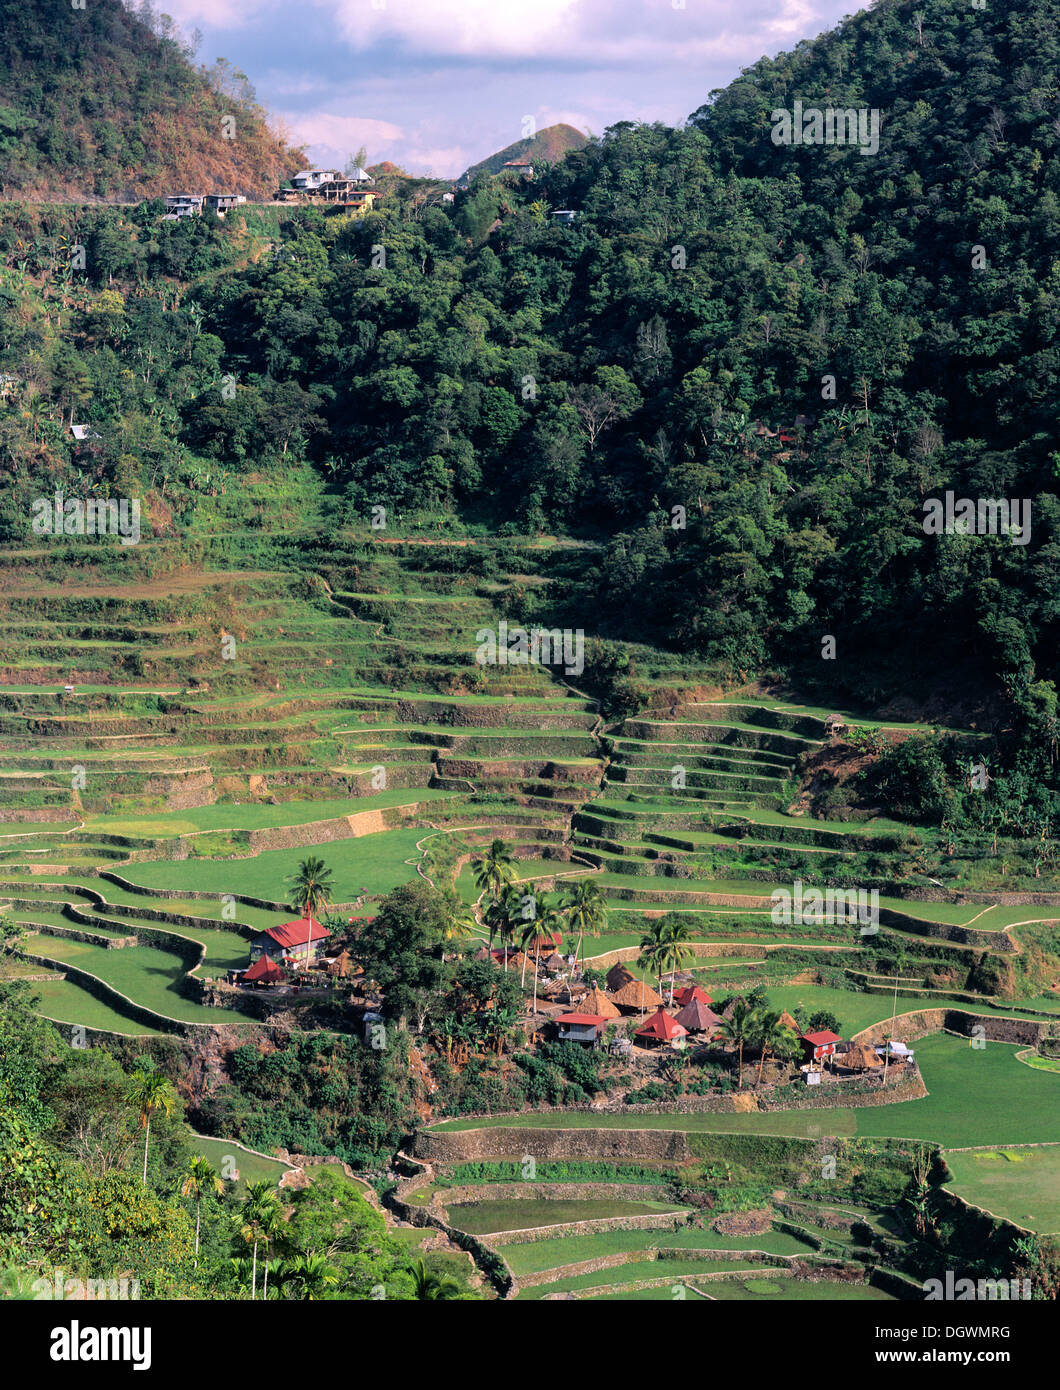 Una aldea cerca de Batad Banga, terrazas de arroz de Banaue, también conocido como pico musuan Banga, una aldea de Ifugao, Luzón, Filipinas Foto de stock